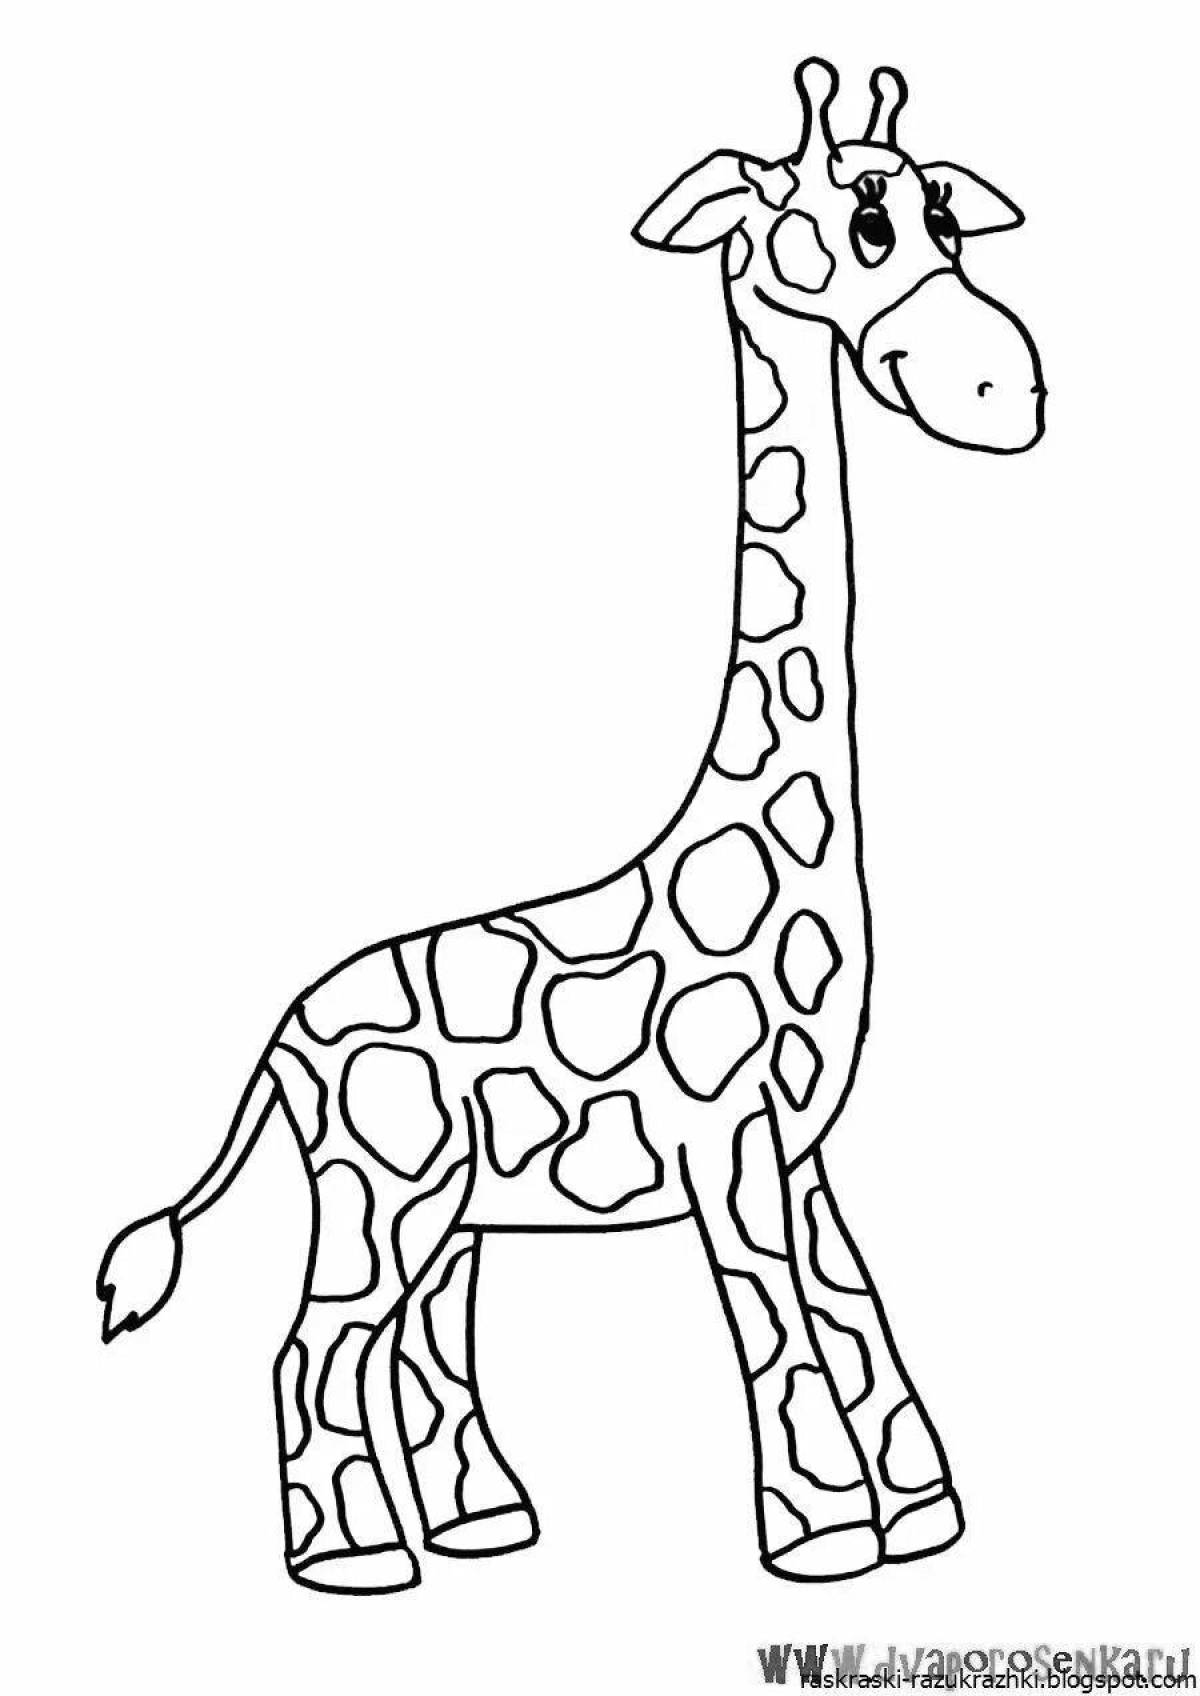 Exquisite giraffe coloring